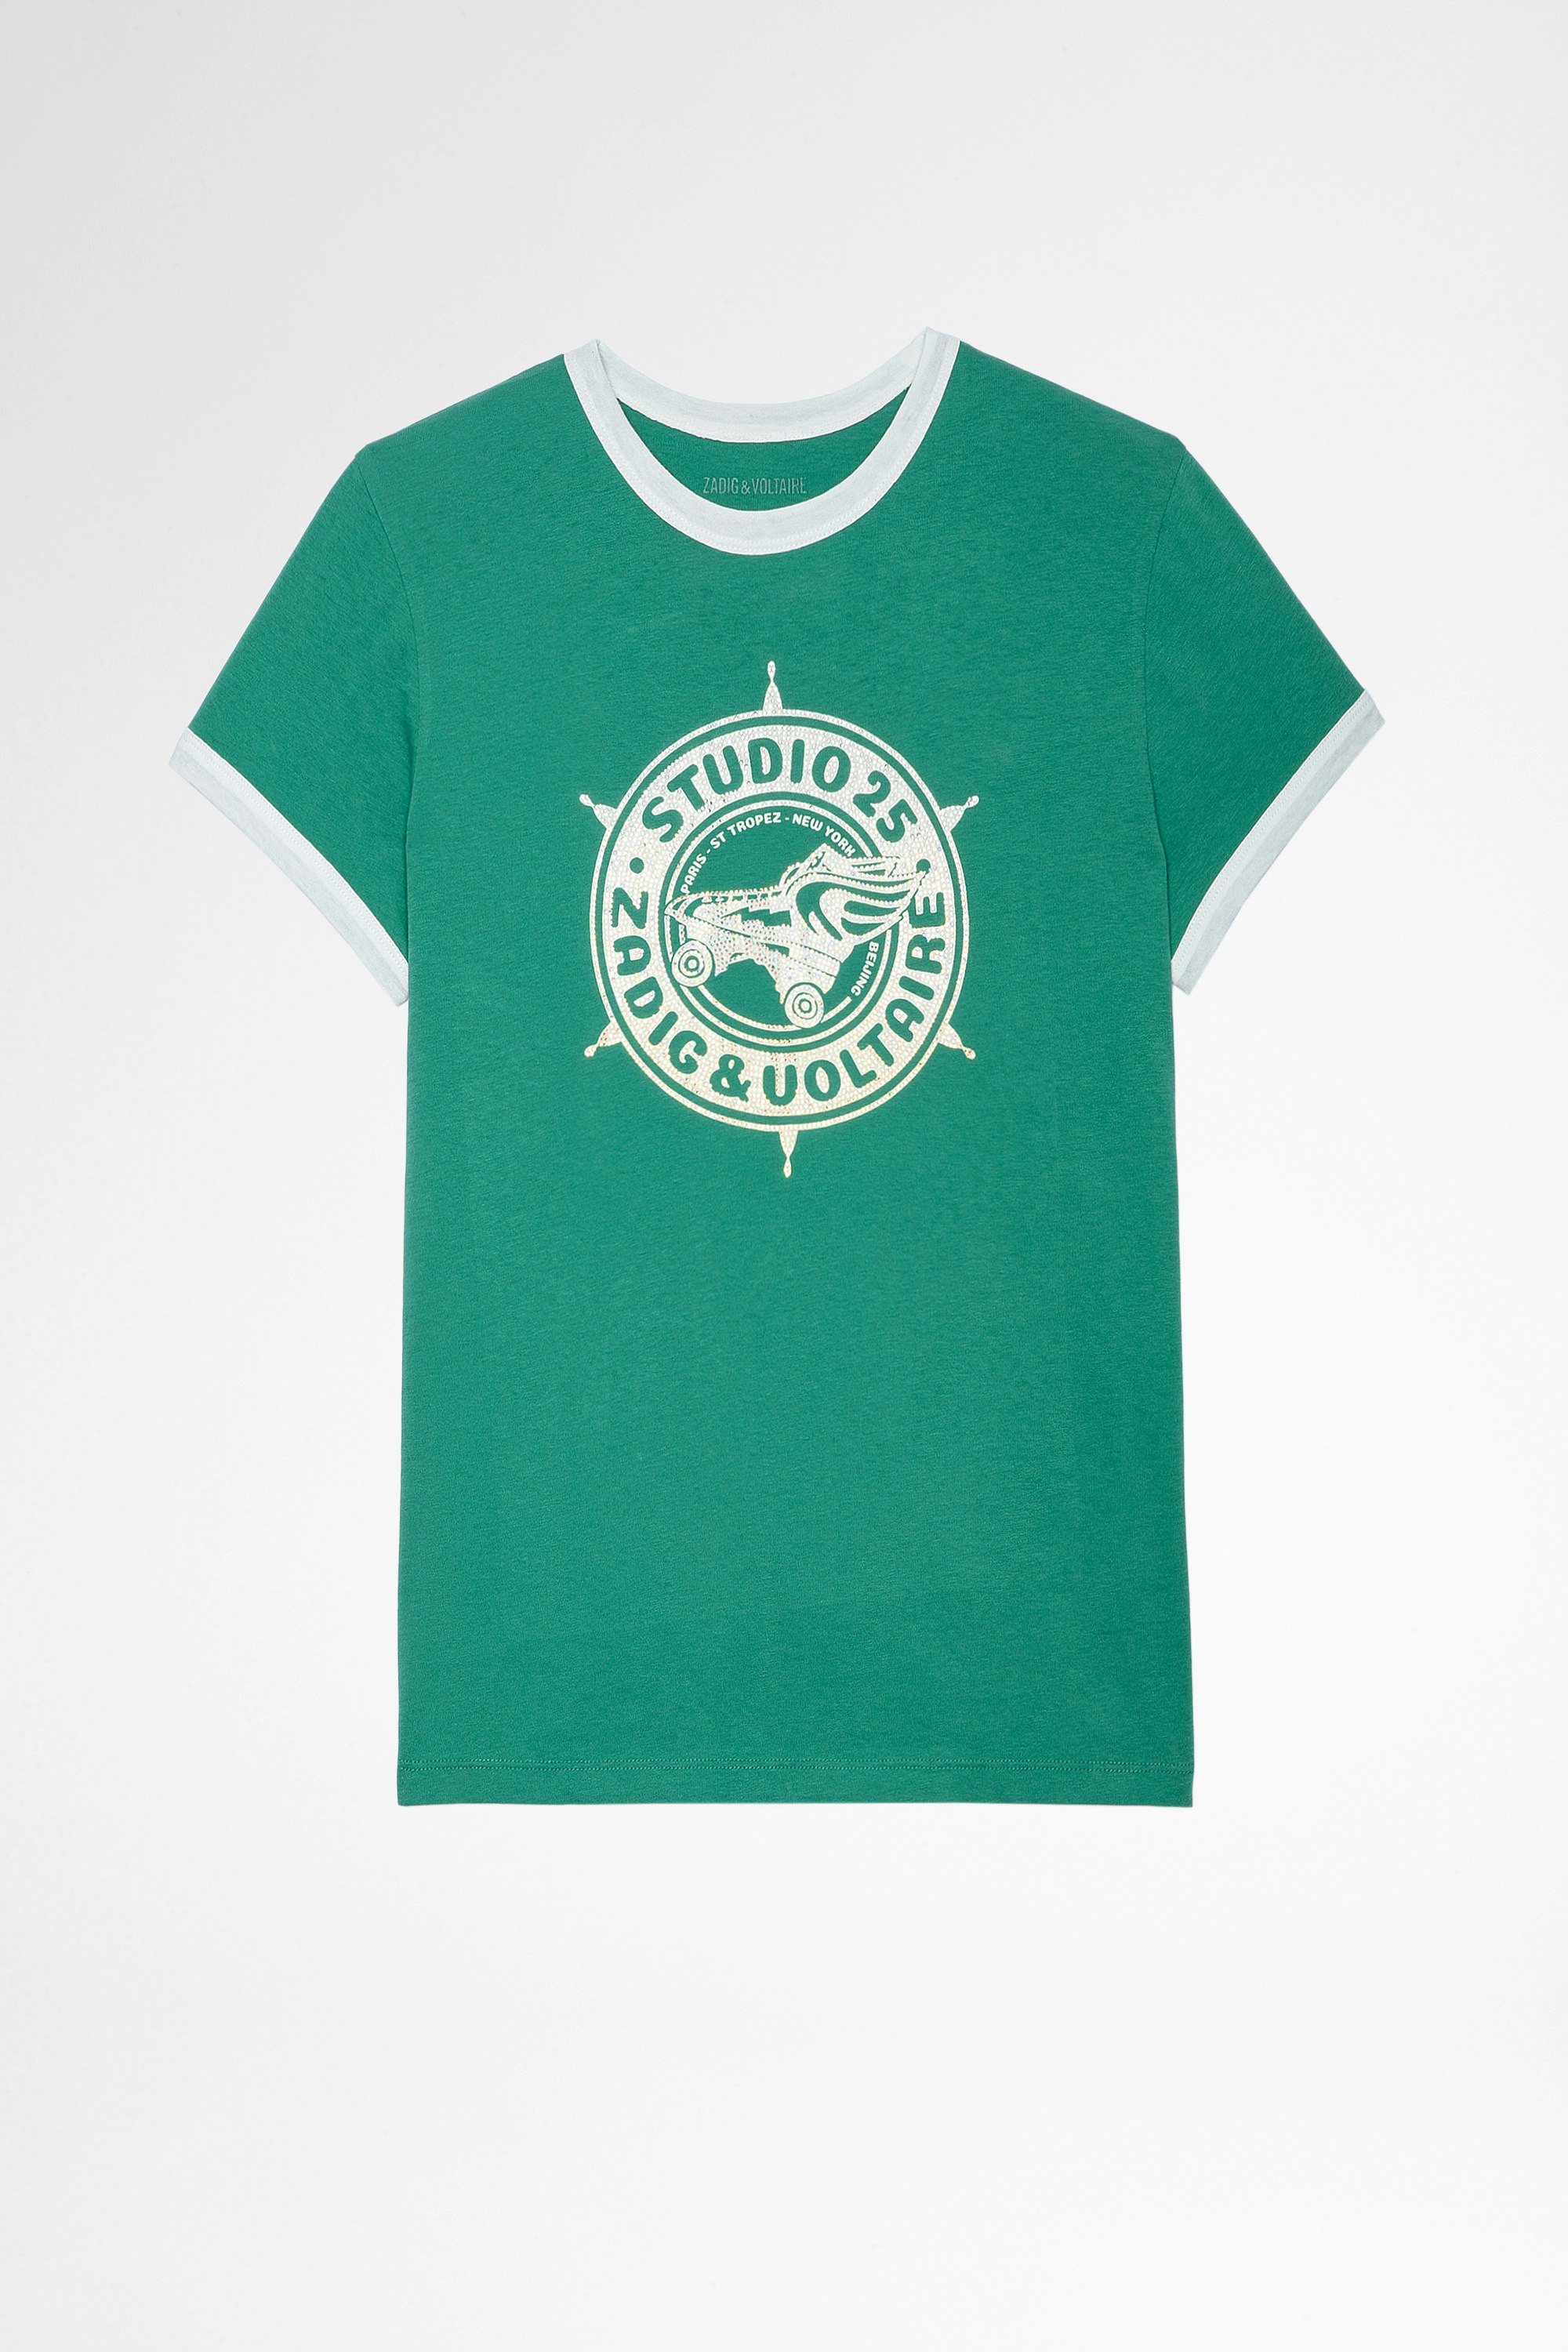 T-Shirt Zoe Studio 25 Strass T-shirt en coton vert imprimé studio 25 recouvert de cristaux Femme